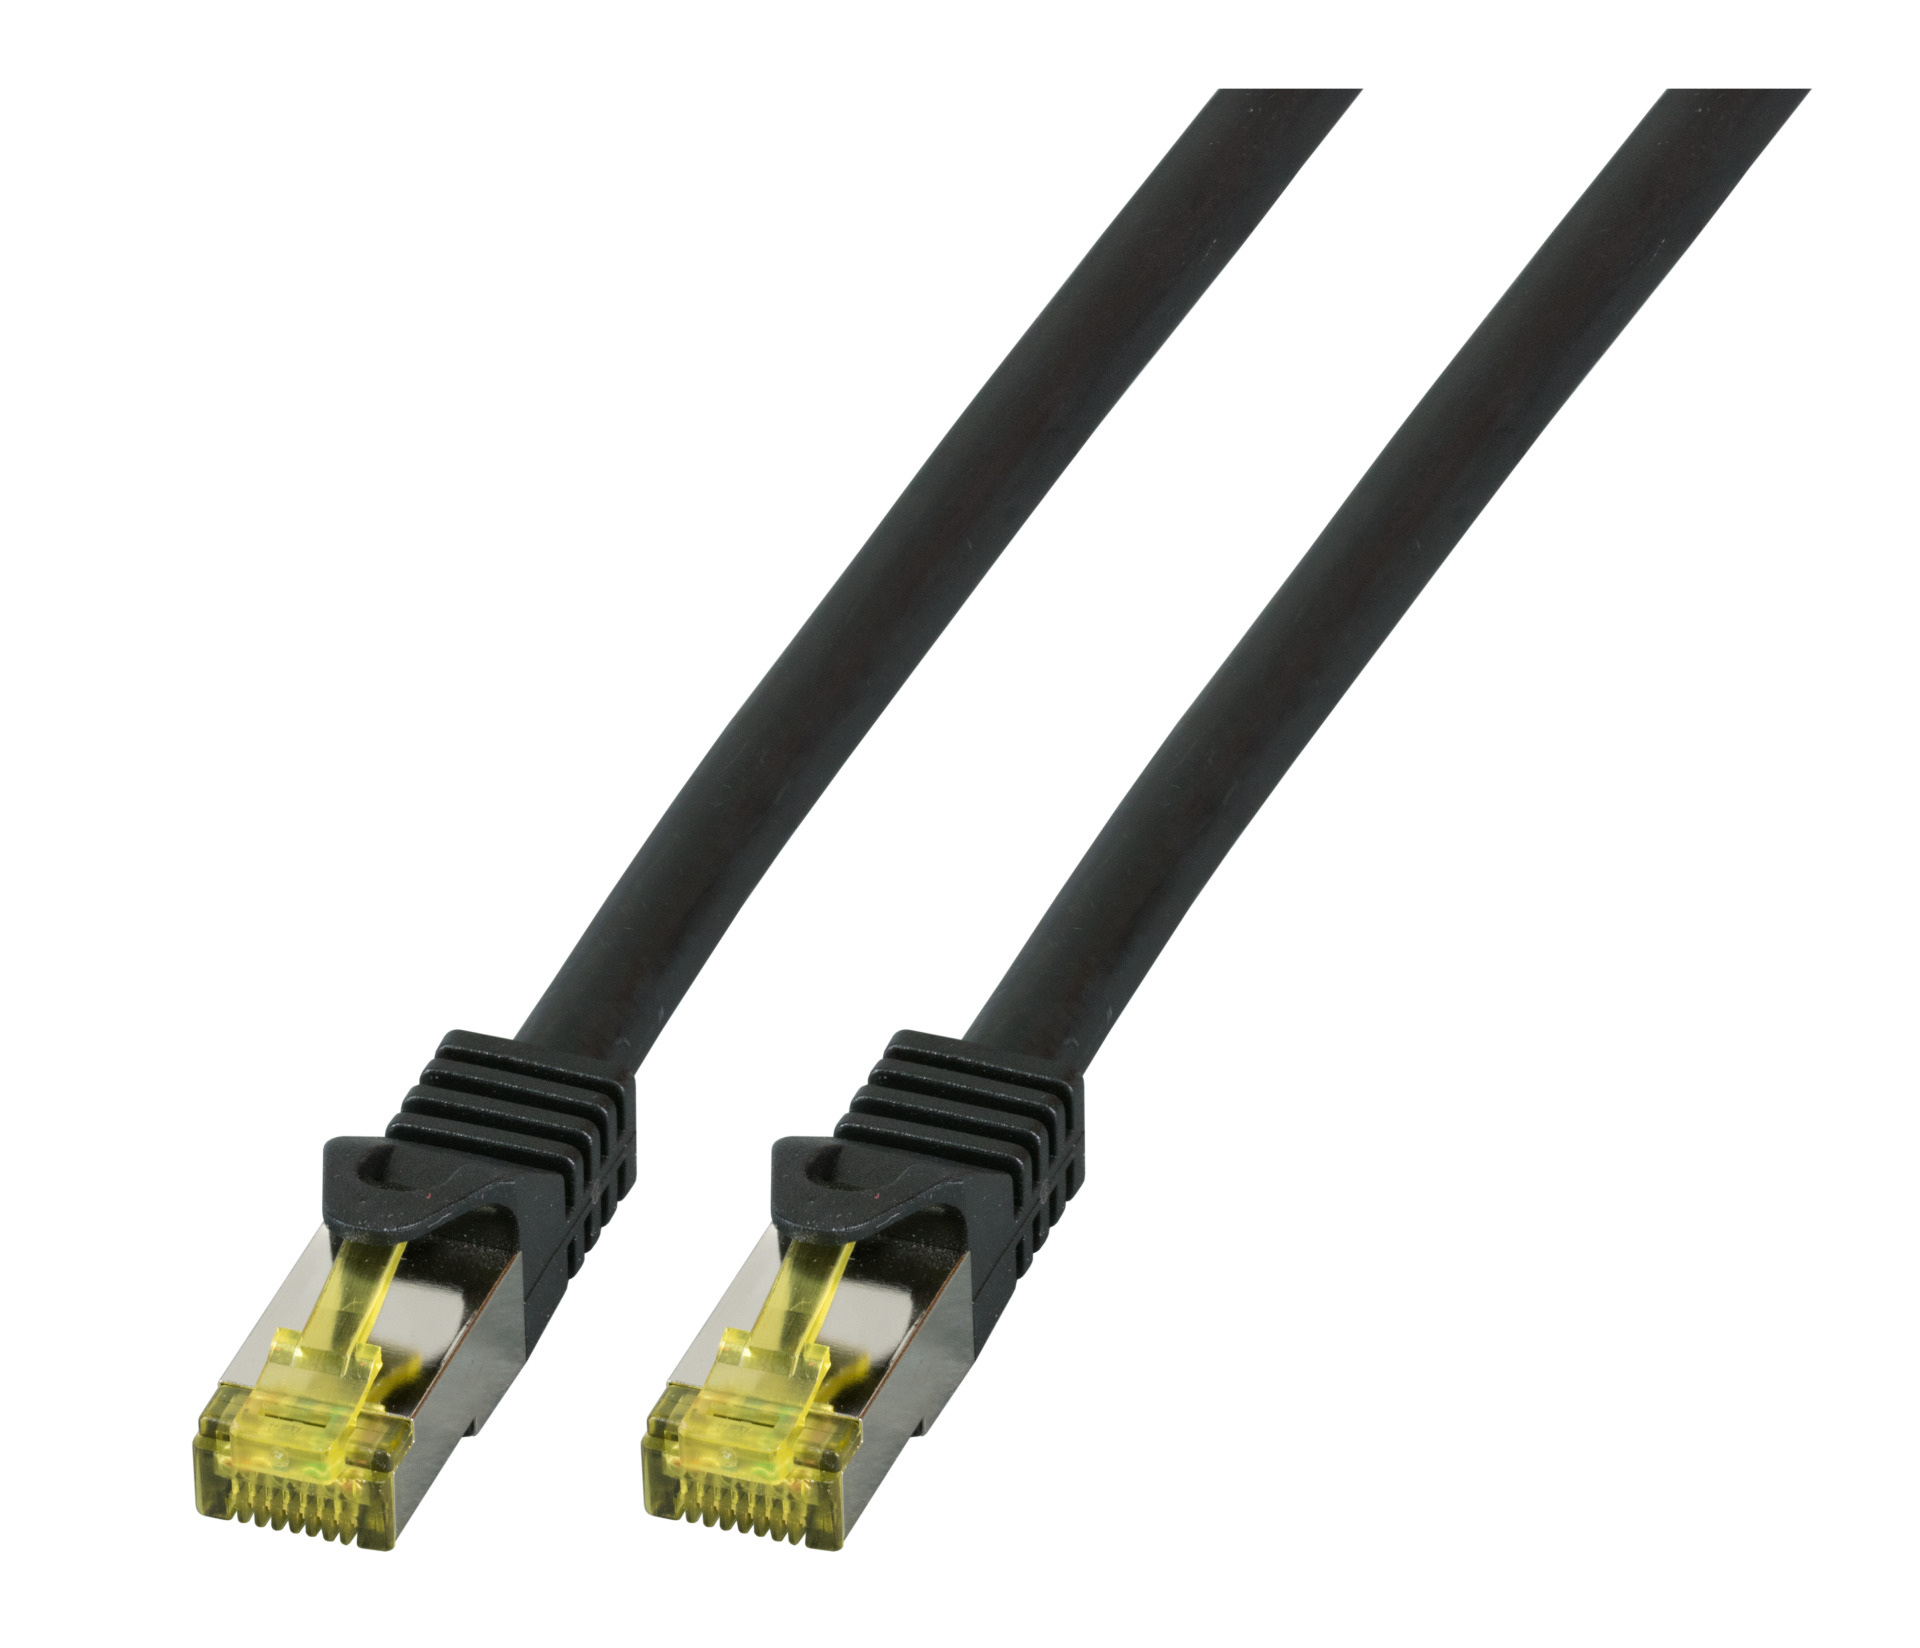 RJ45 Patch cable S/FTP, Cat.6A, LSZH, Cat.7 Raw cable, 2m, black